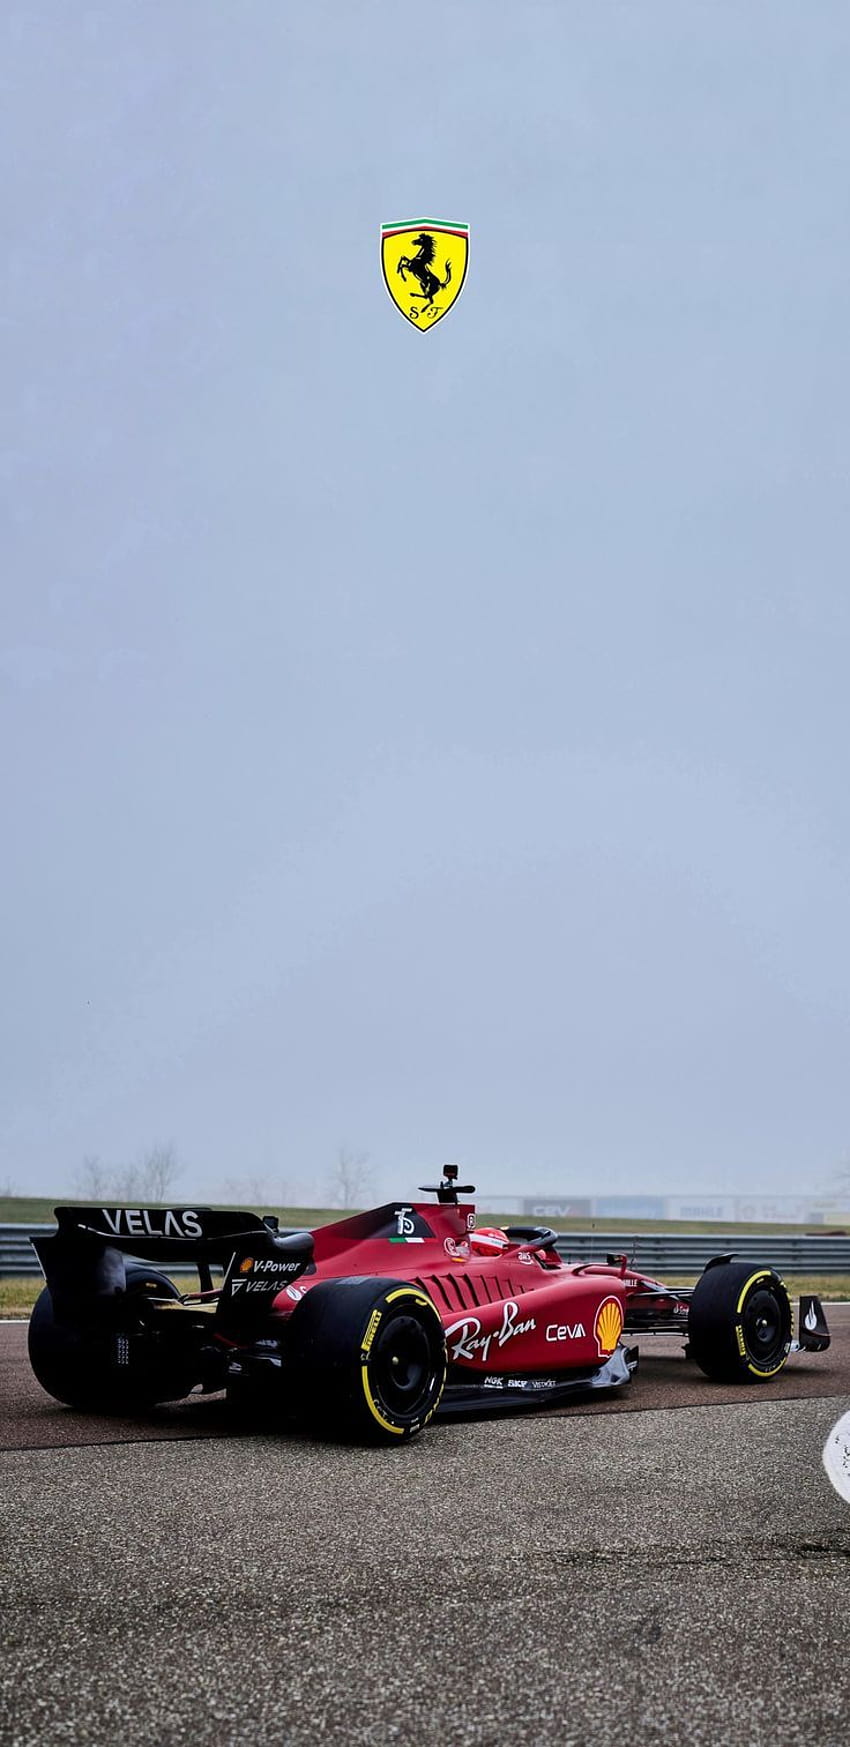 s de teléfono F1 Charles Leclerc 2022 Ferrari en 2022, buenos autos 2022 fondo de pantalla del teléfono